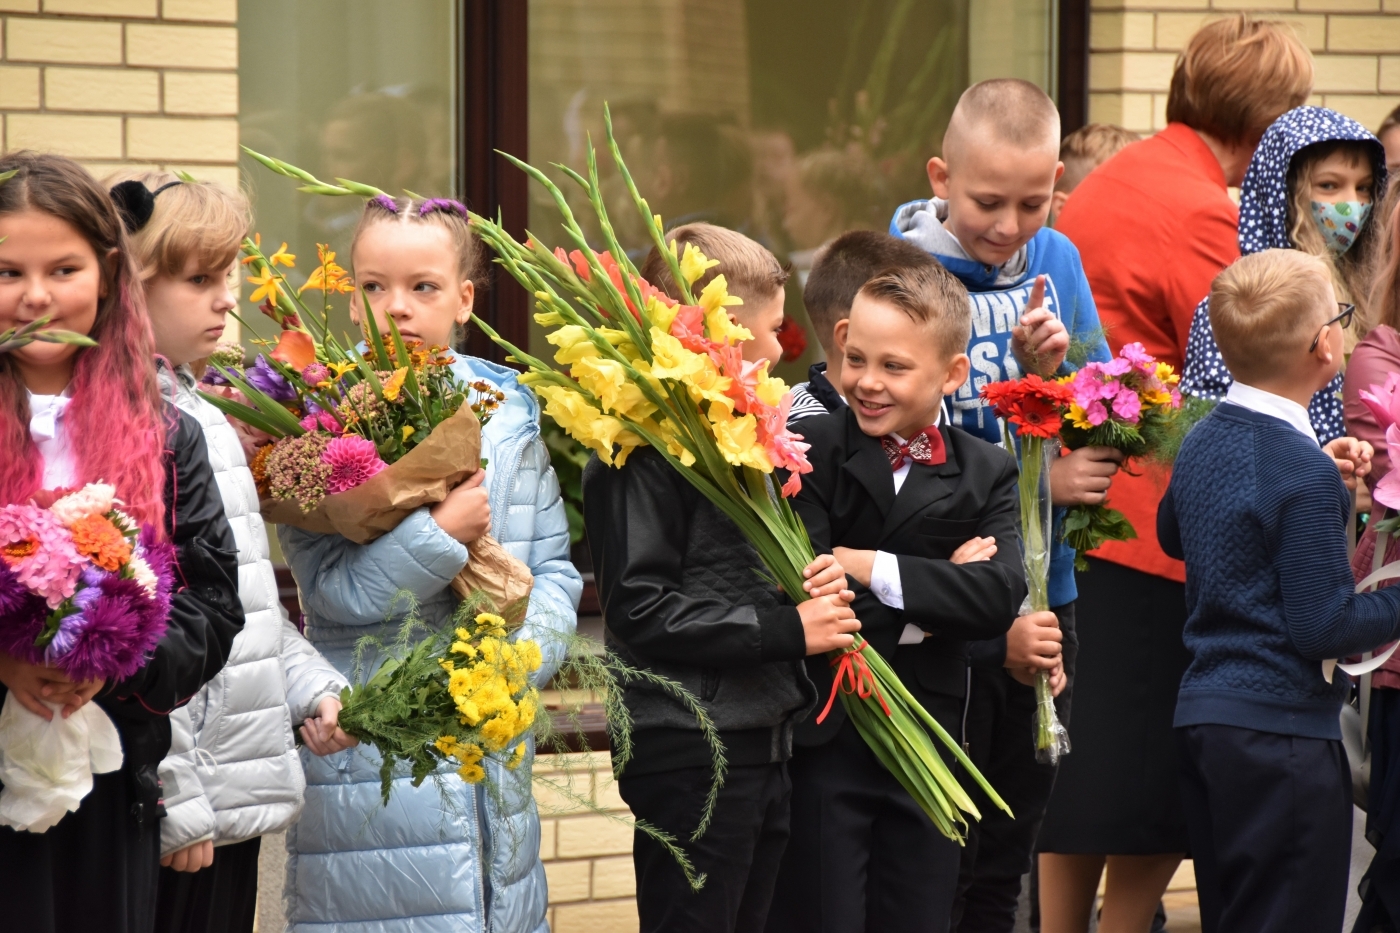 Jelgavas novada izglītības iestādēs, kas kopumā jaunizveidotajā novadā ir 29, šodien skolēni atzīmēja 1. septembri.   Lai visiem izdevies, veselīgs un veiksmes piepildīts mācību gads!